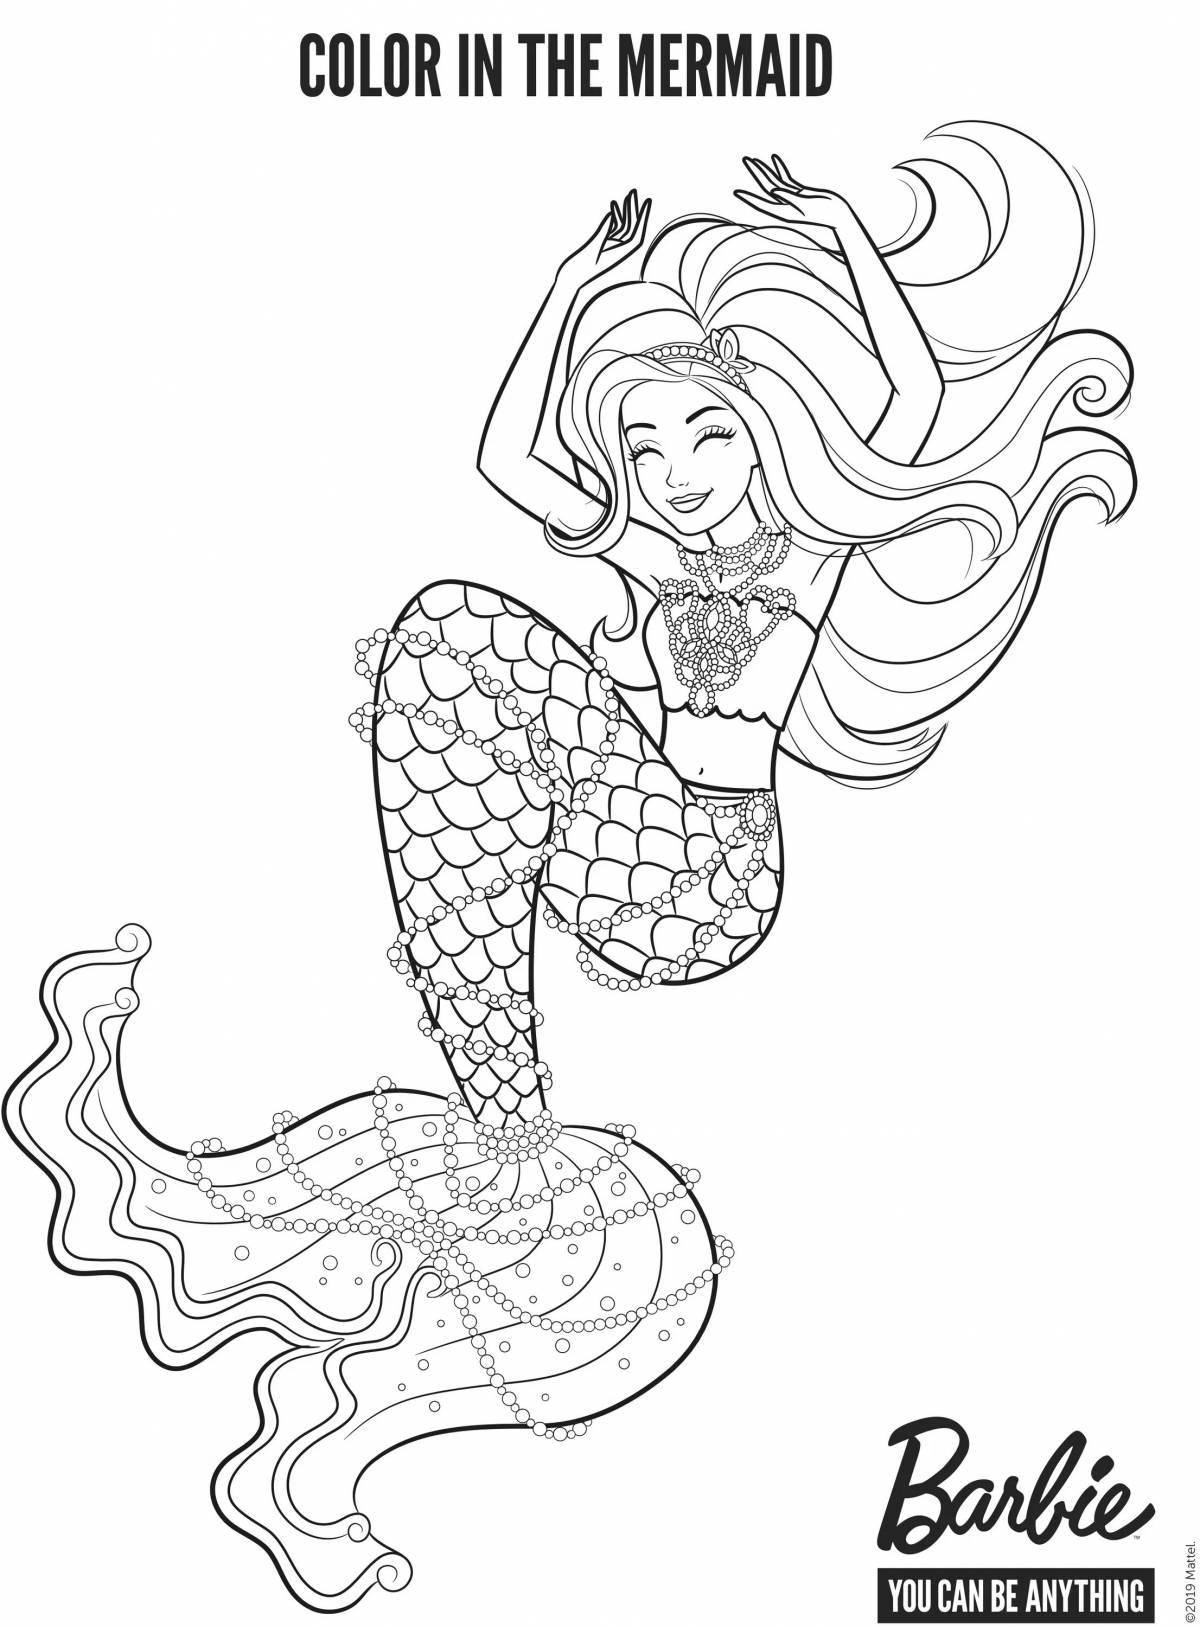 Magic barbie mermaid coloring book for girls